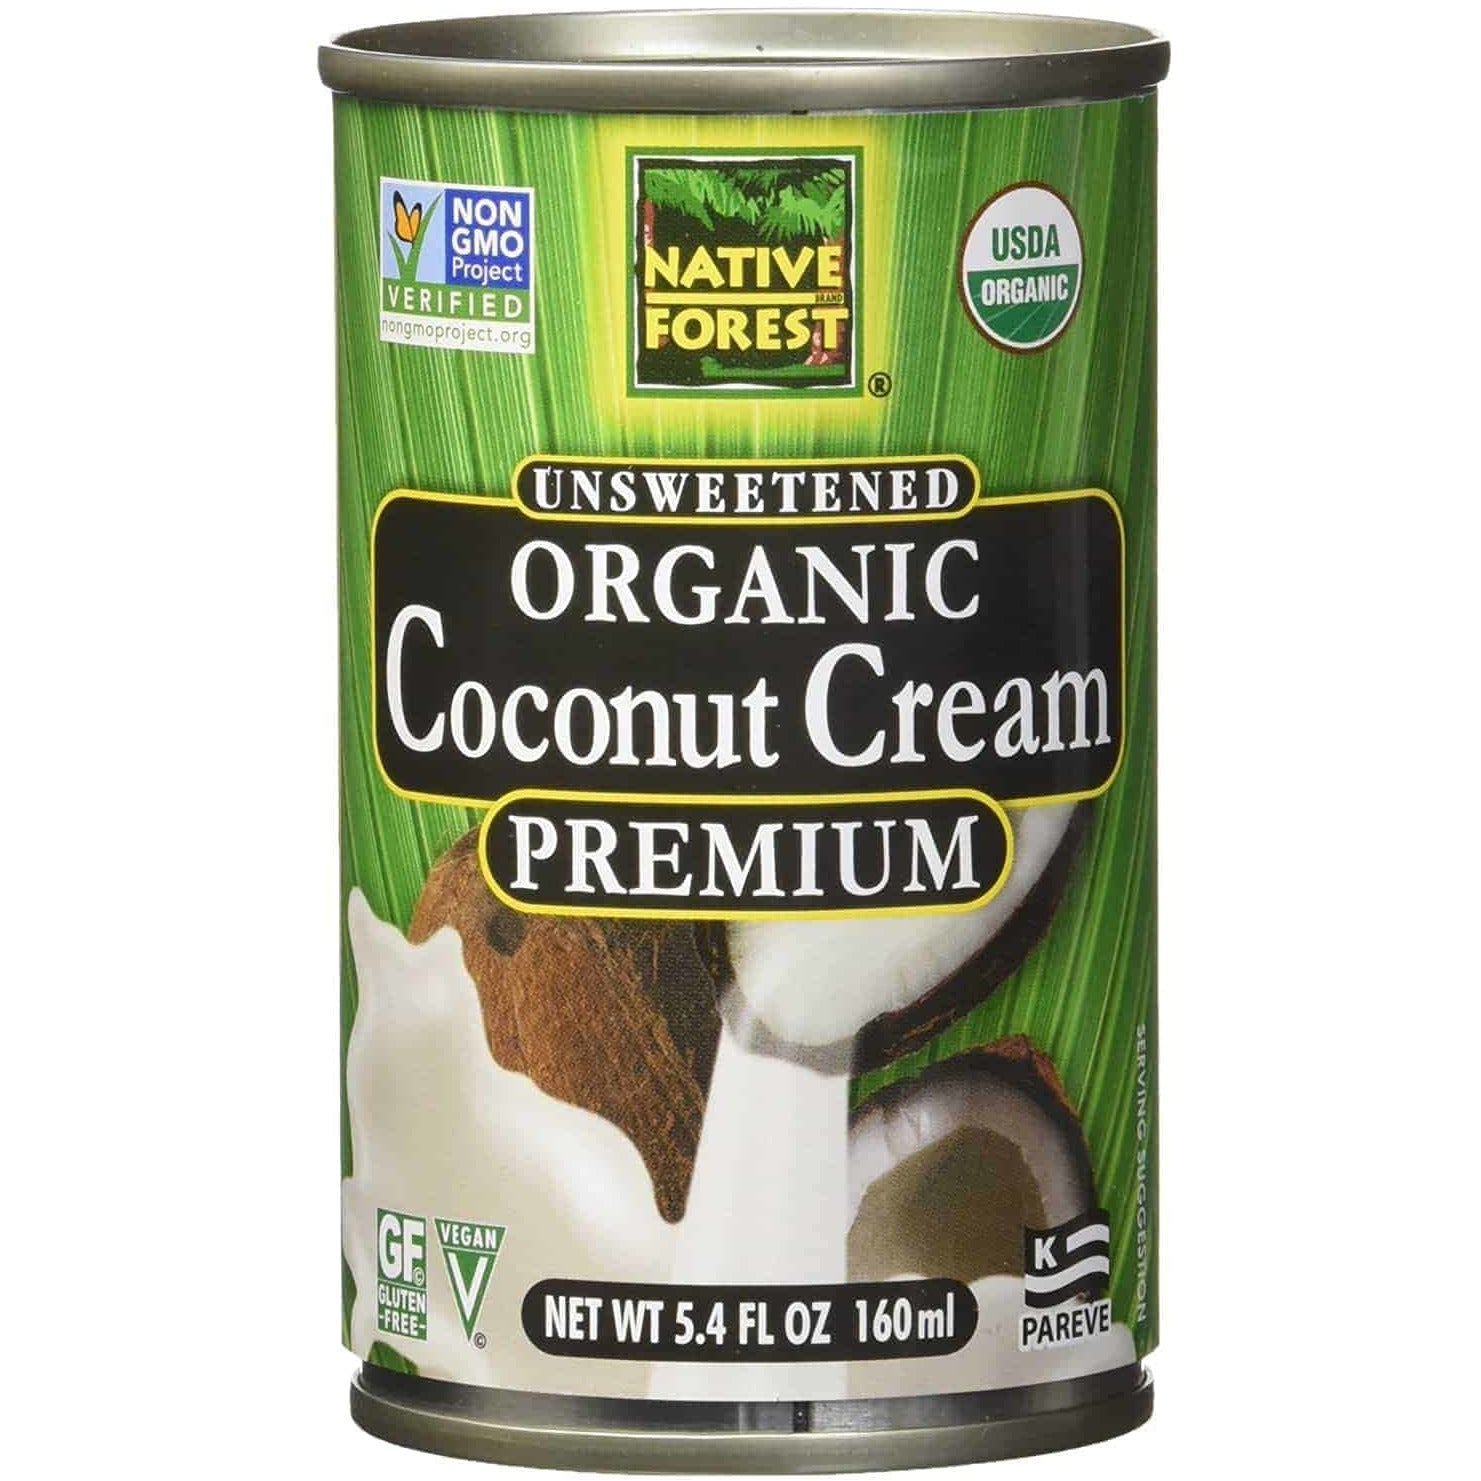 Native Forest Coconut Cream organic, 5.4 oz